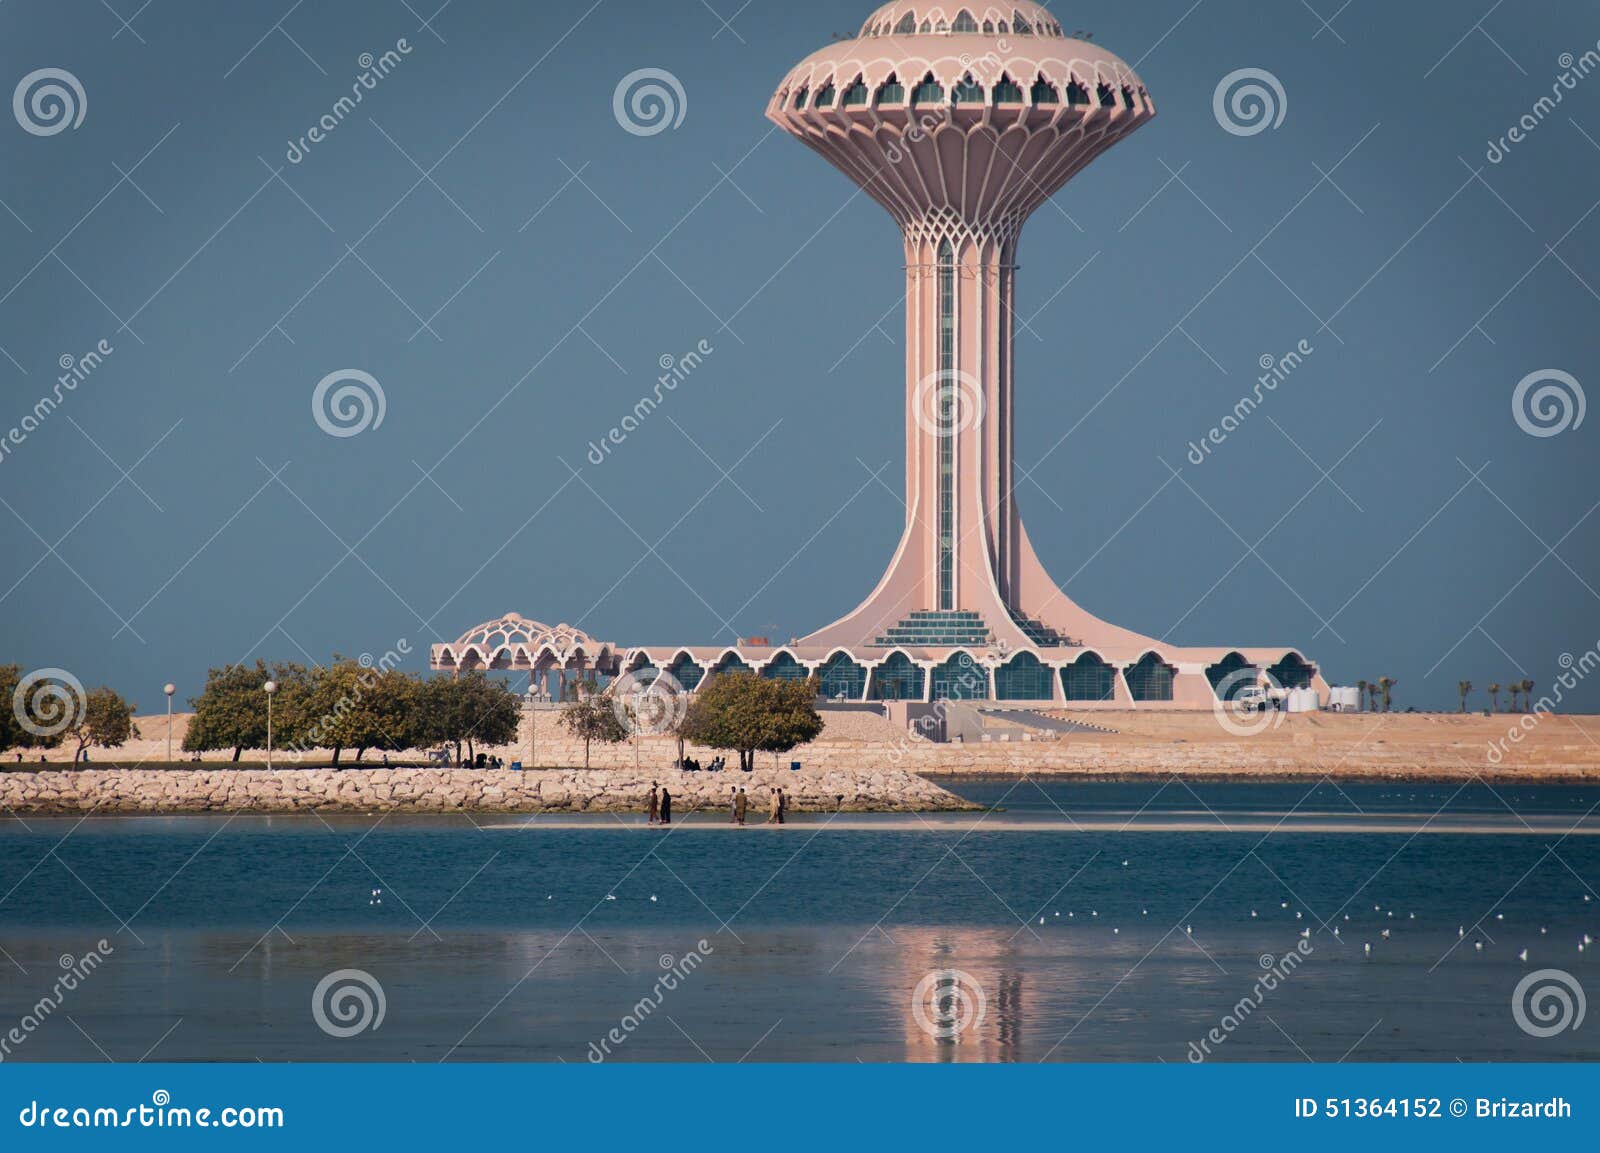 al khobar tower, al khobar, saudi arabia